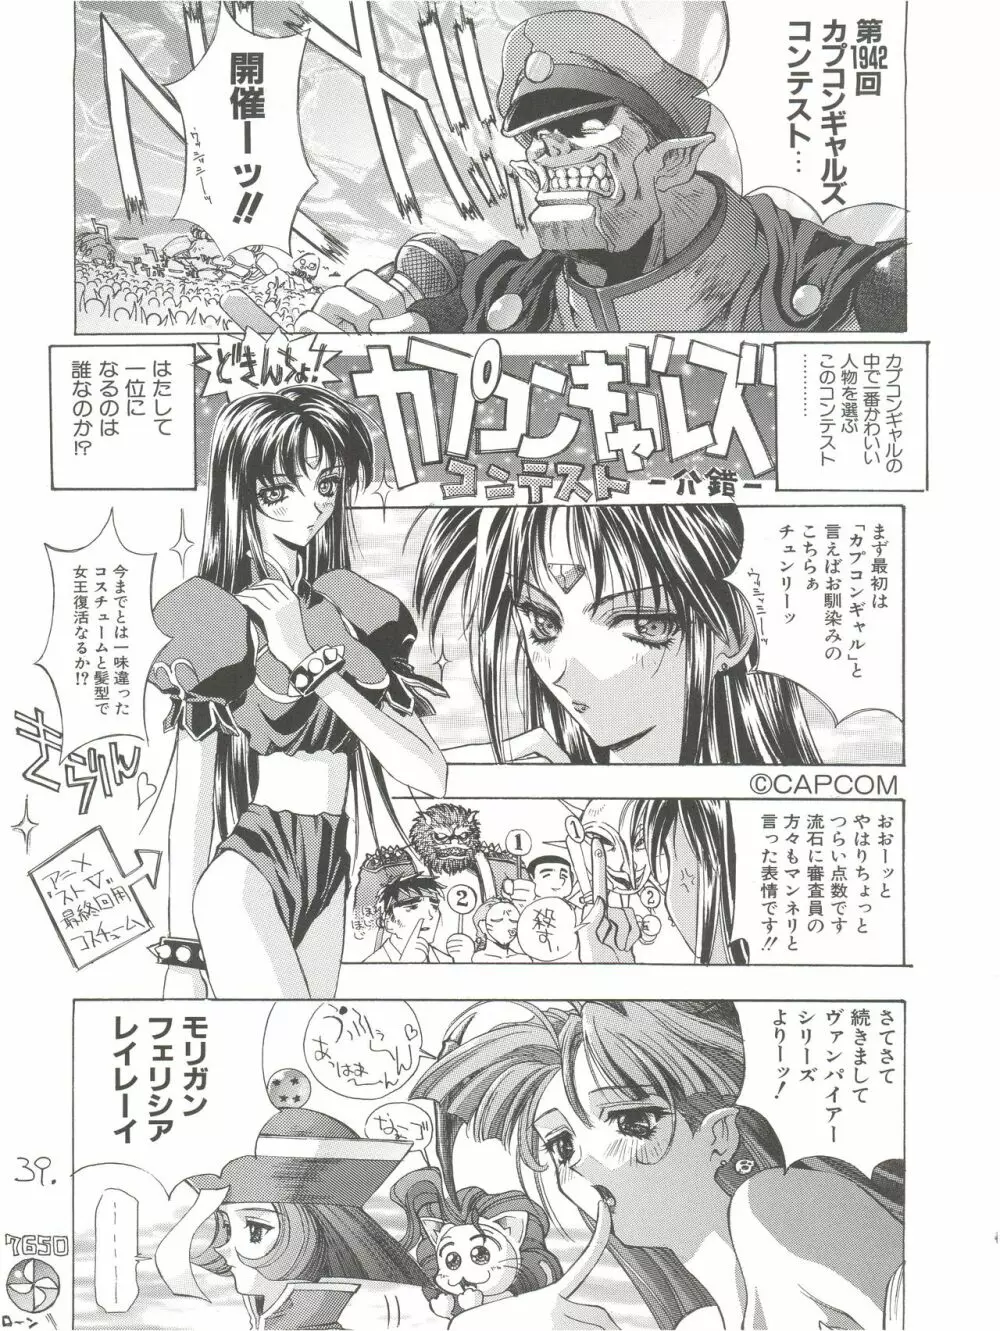 KAISHAKU12 介錯 -4078- 39ページ